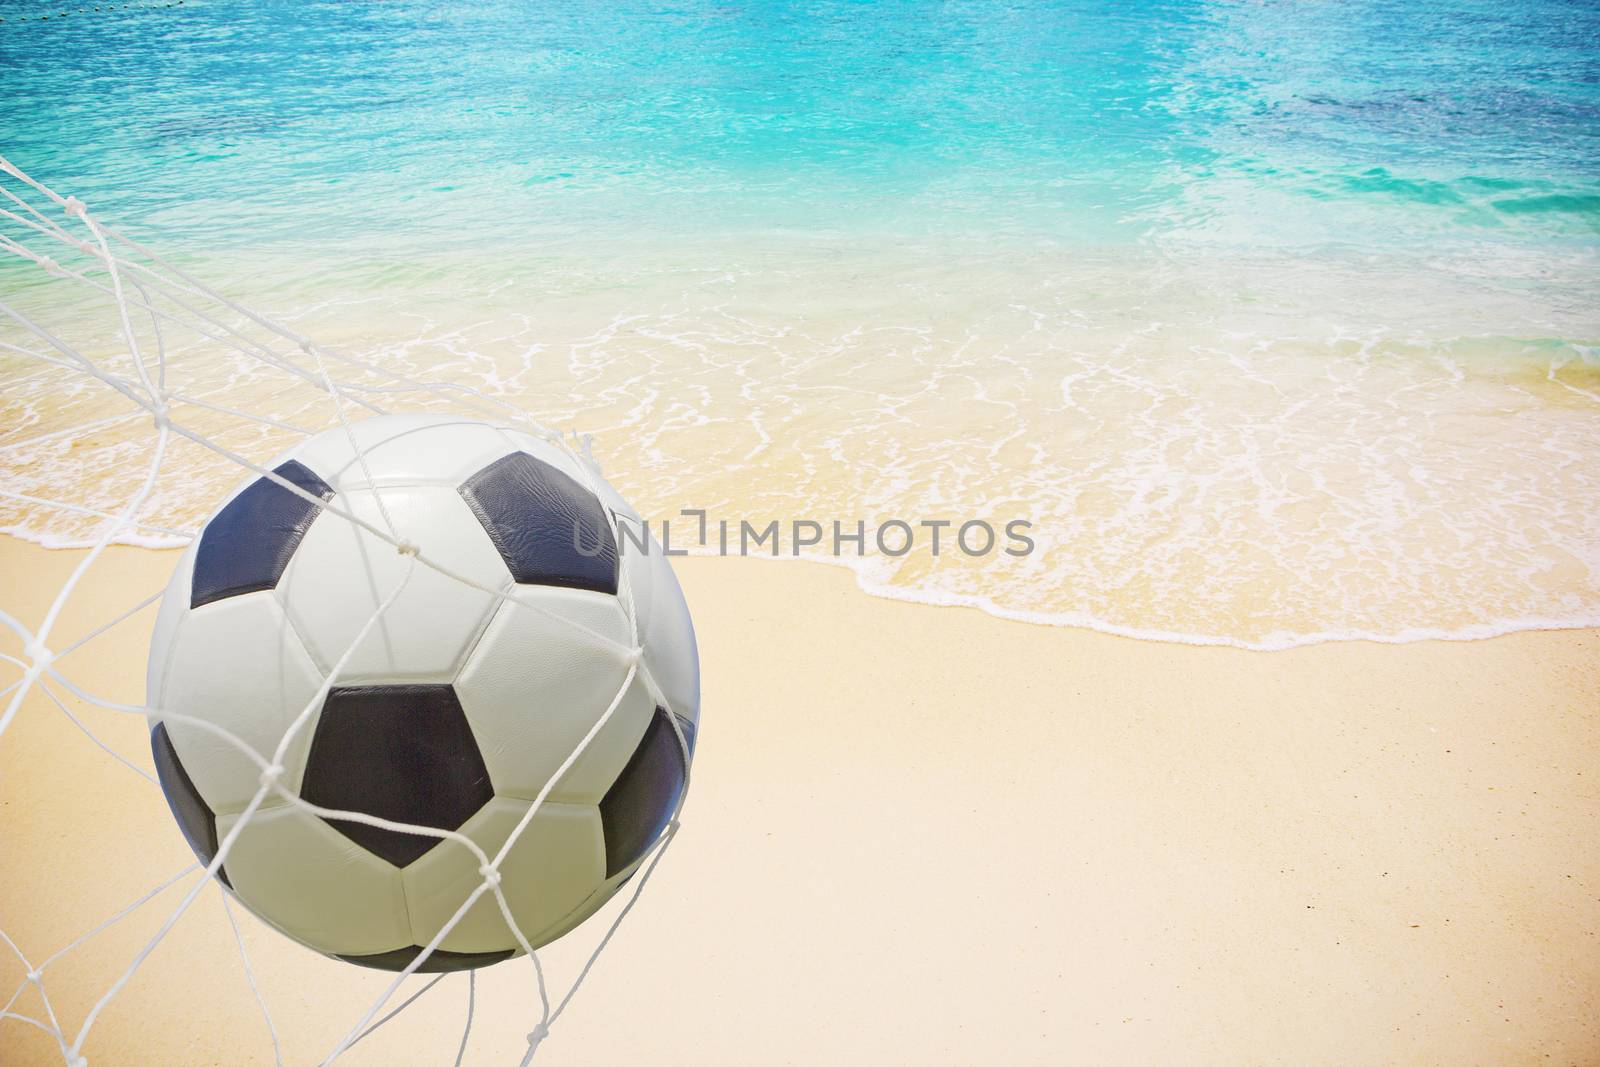 ฆoccer ball in a net.  by wyoosumran